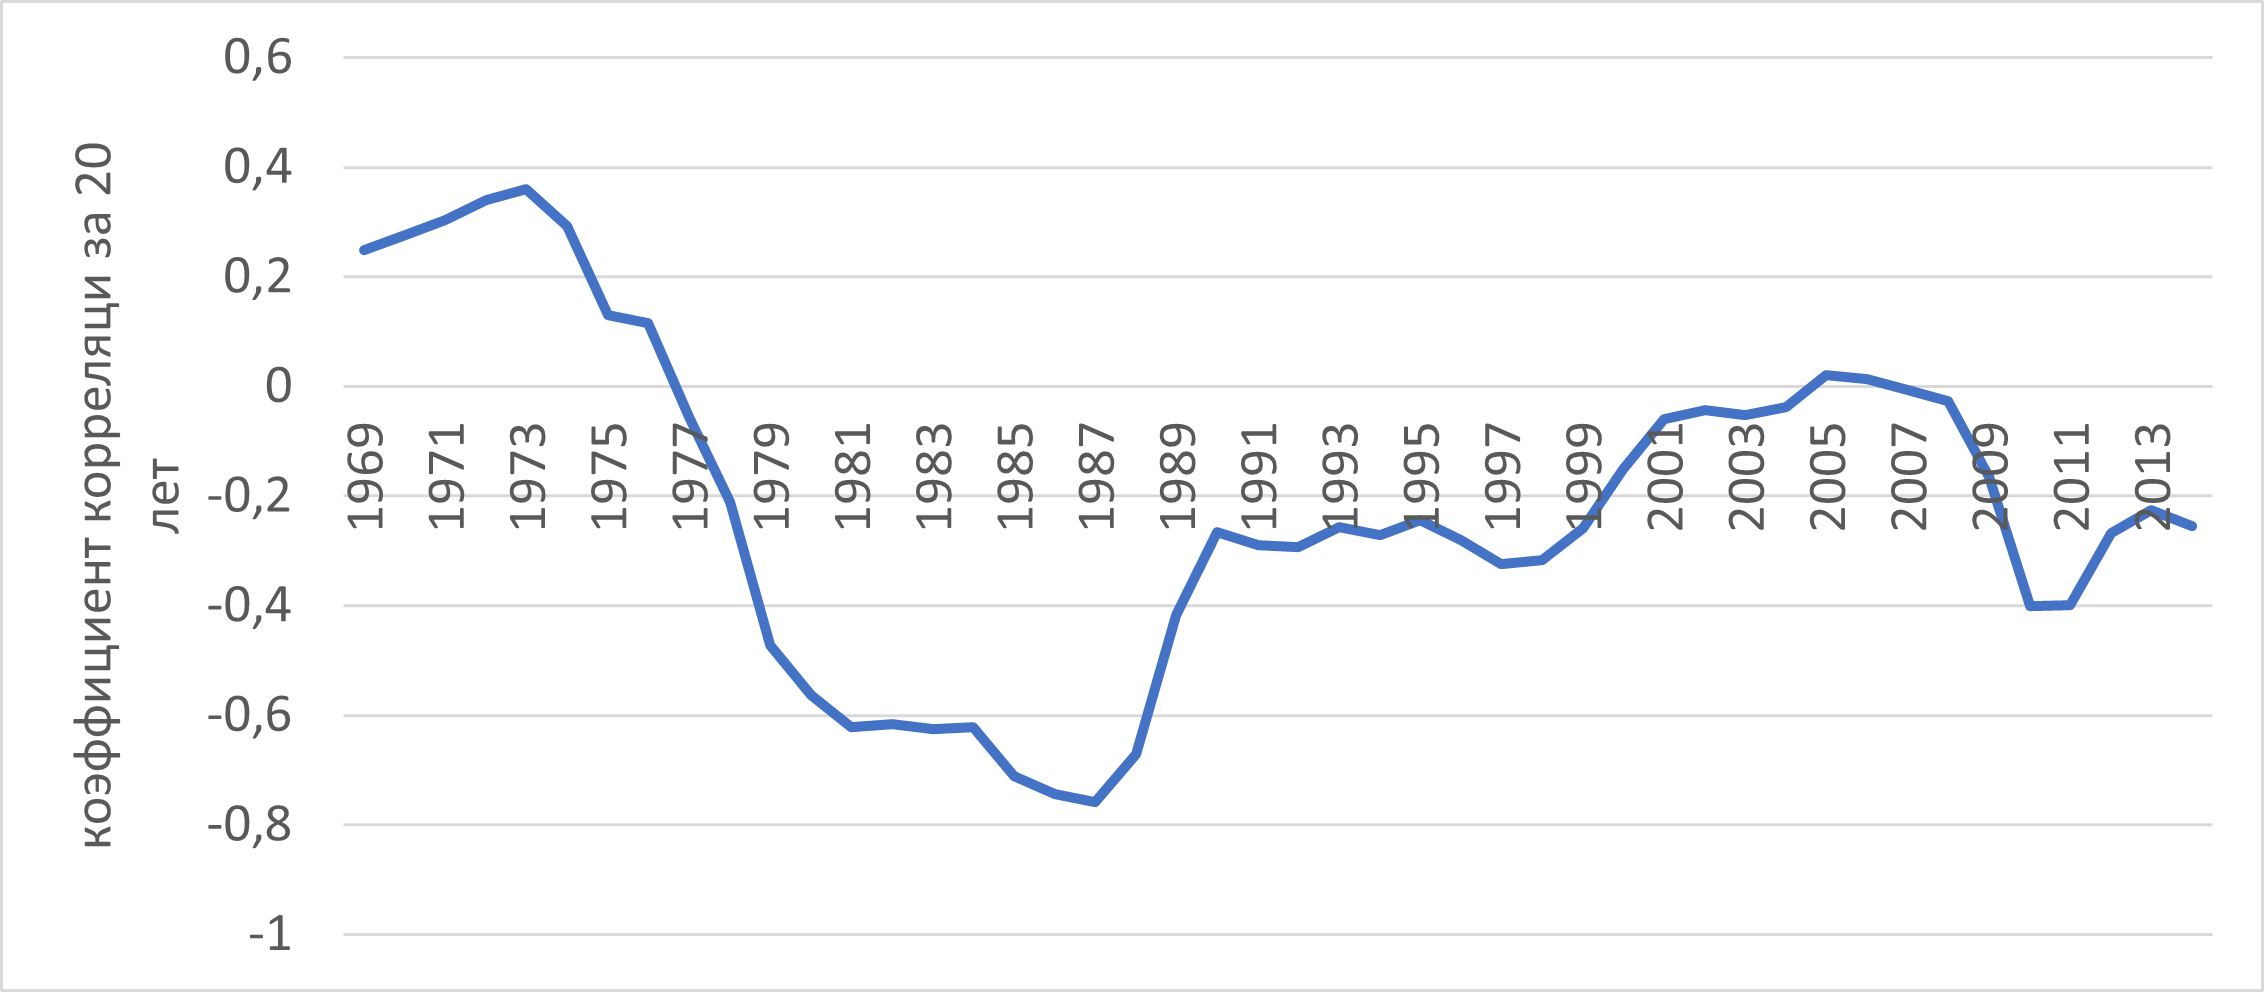 Динамика скользящего коэффициента корреляции за 20 лет между временным рядом индексов радиального прироста и временным рядом чисел Вольфа